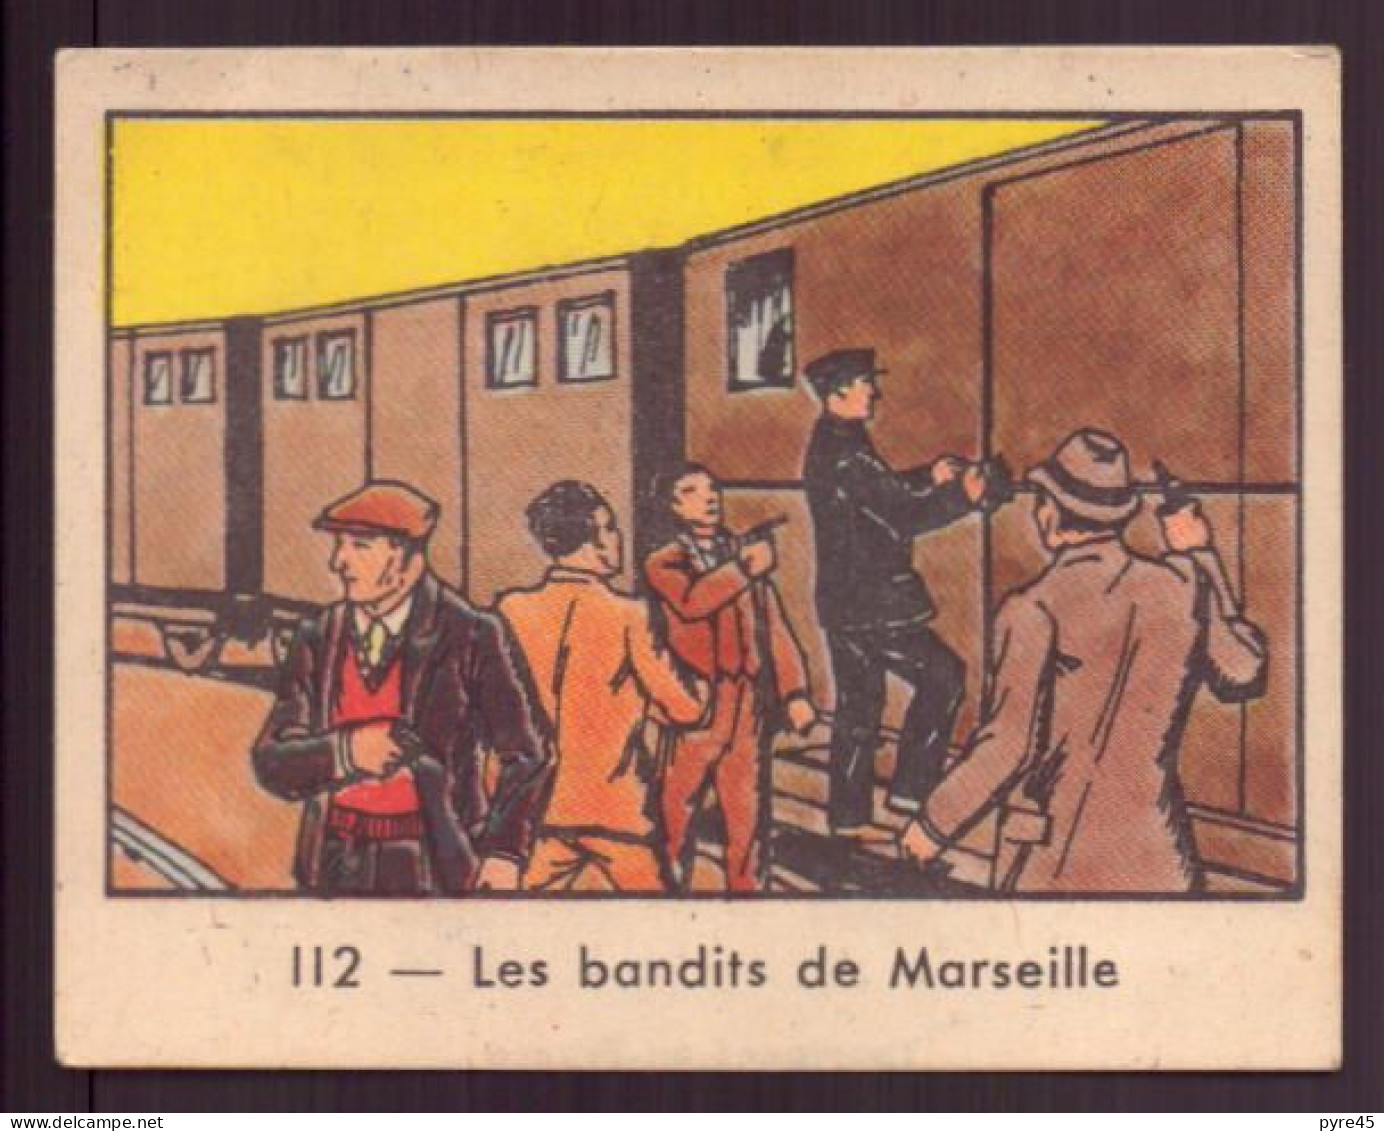 Image Publicitaire " Globo " N° 112, Polices D'états Contre Les Gangsters, Les Bandits De Marseille - Sonstige & Ohne Zuordnung